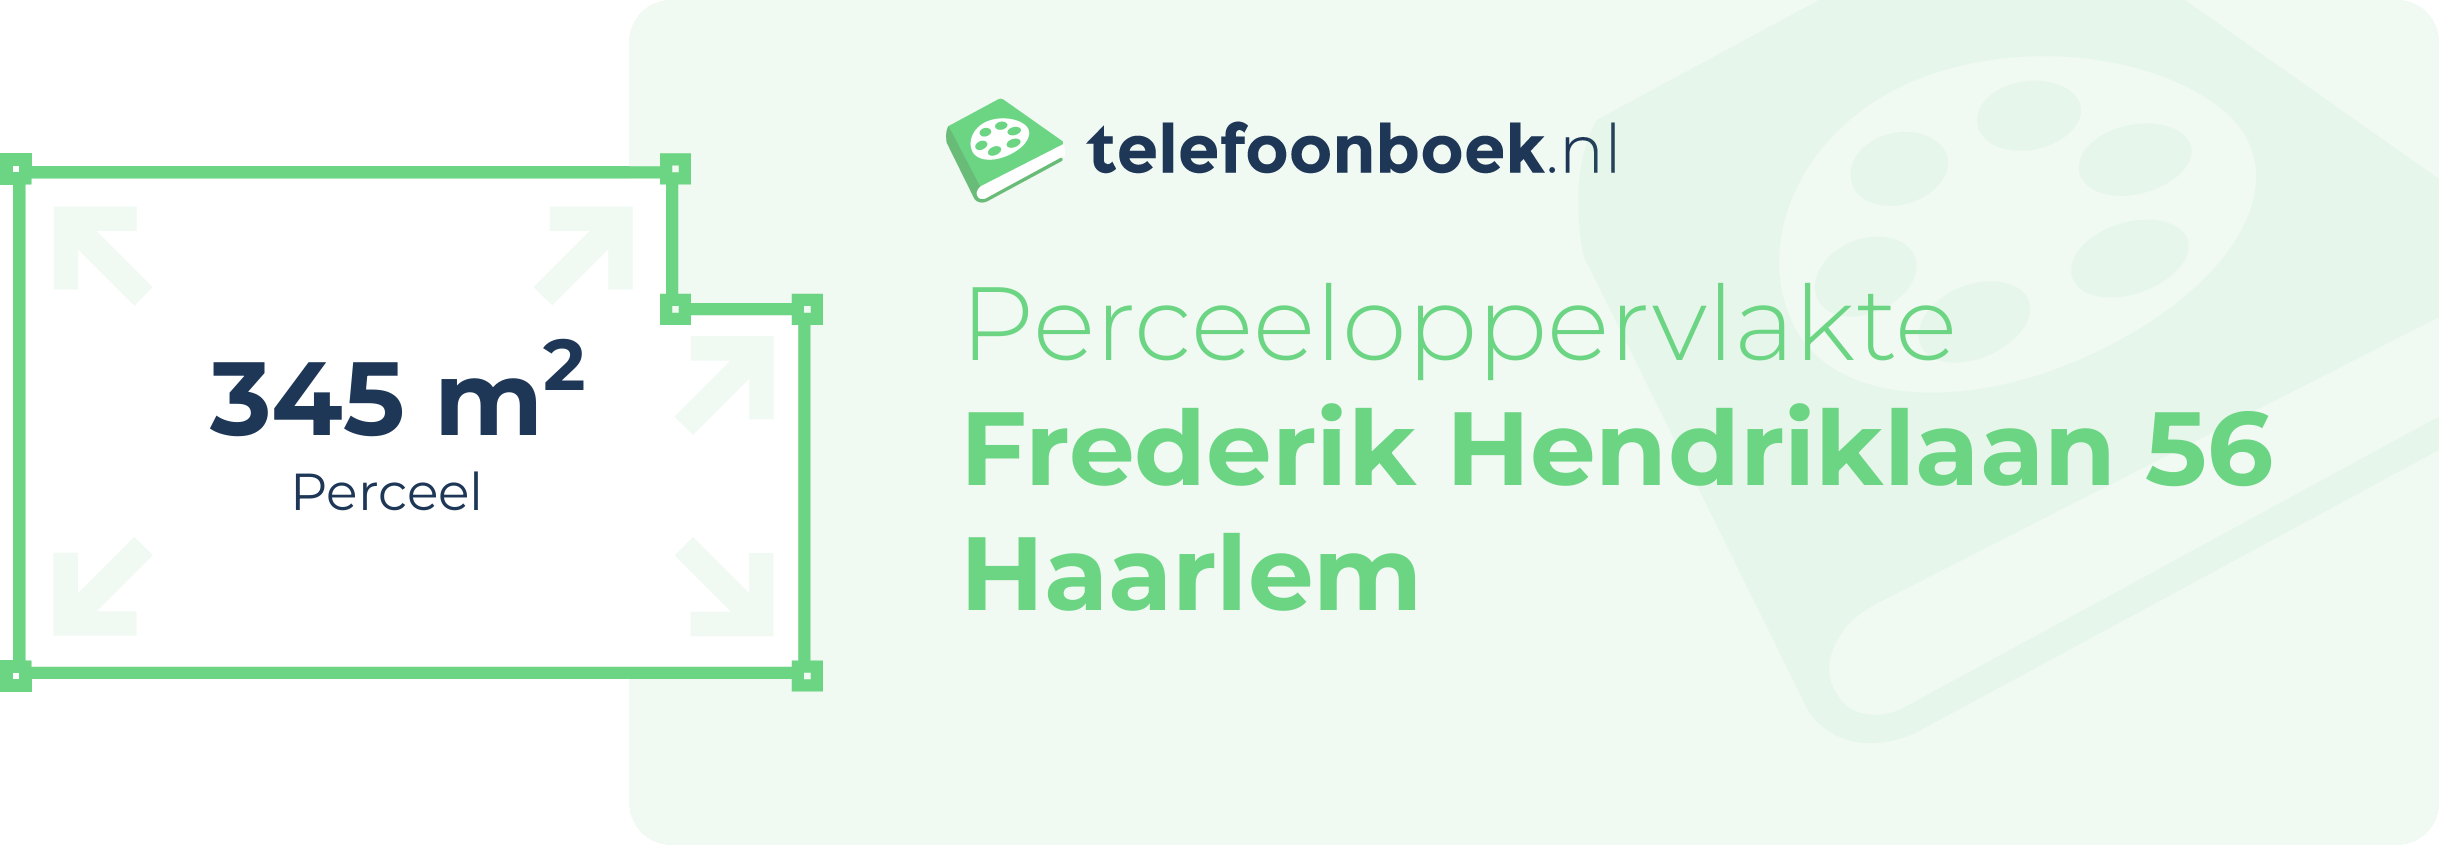 Perceeloppervlakte Frederik Hendriklaan 56 Haarlem